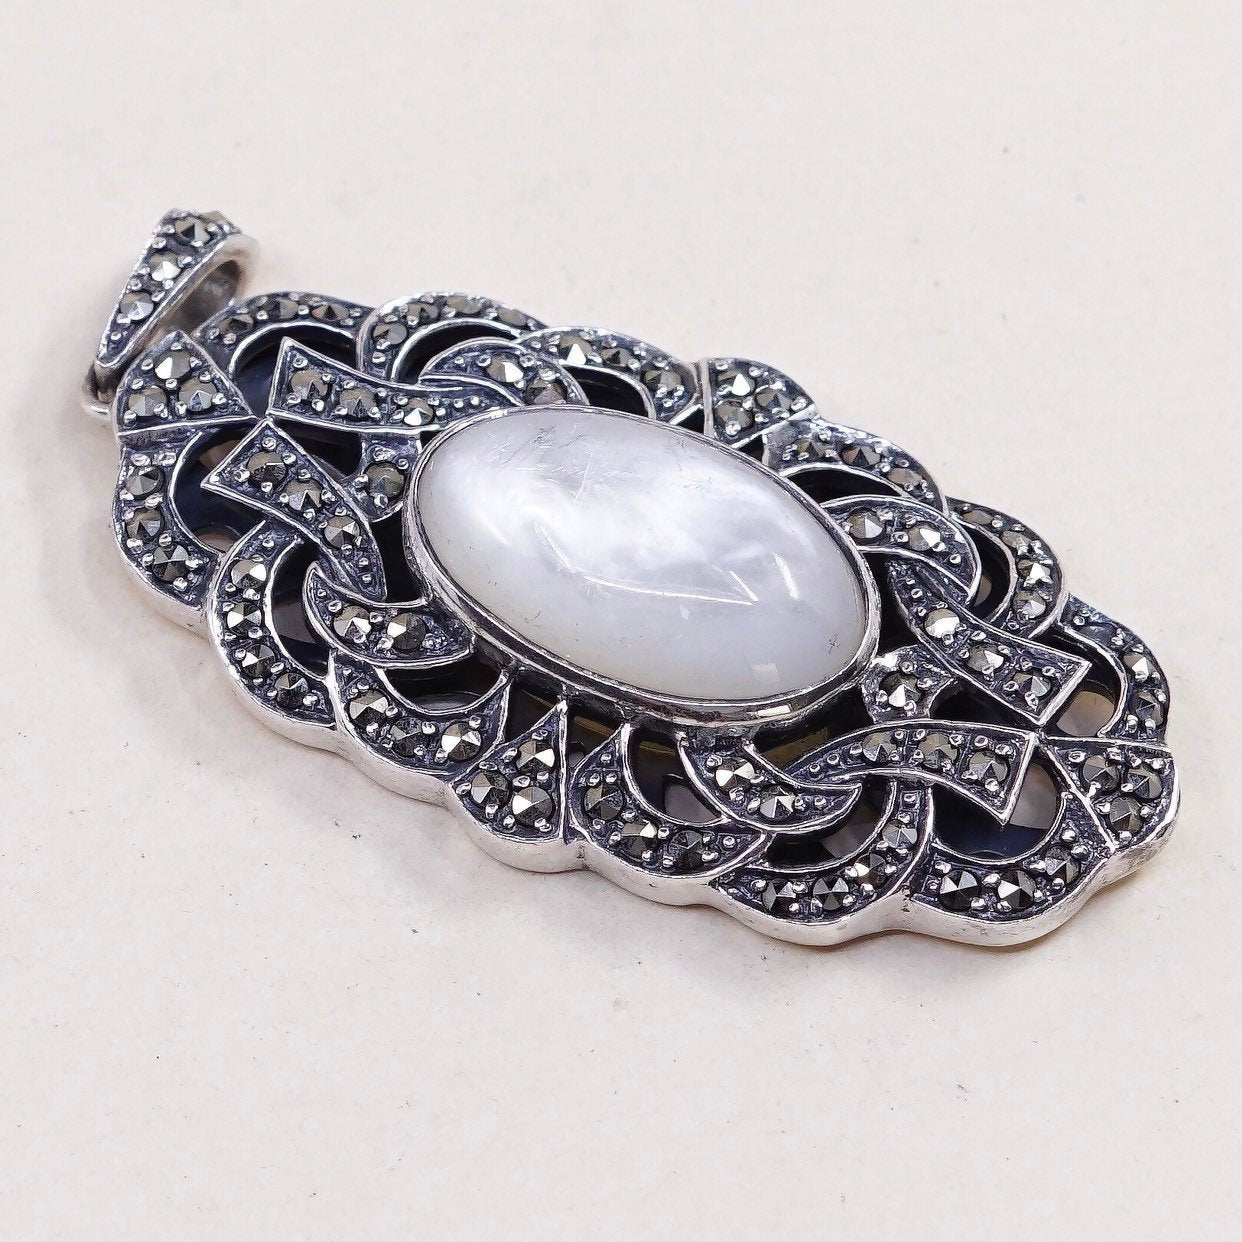 VTG SR sterling silver handmade pendant, mother of pearl w/ marcasite pendant